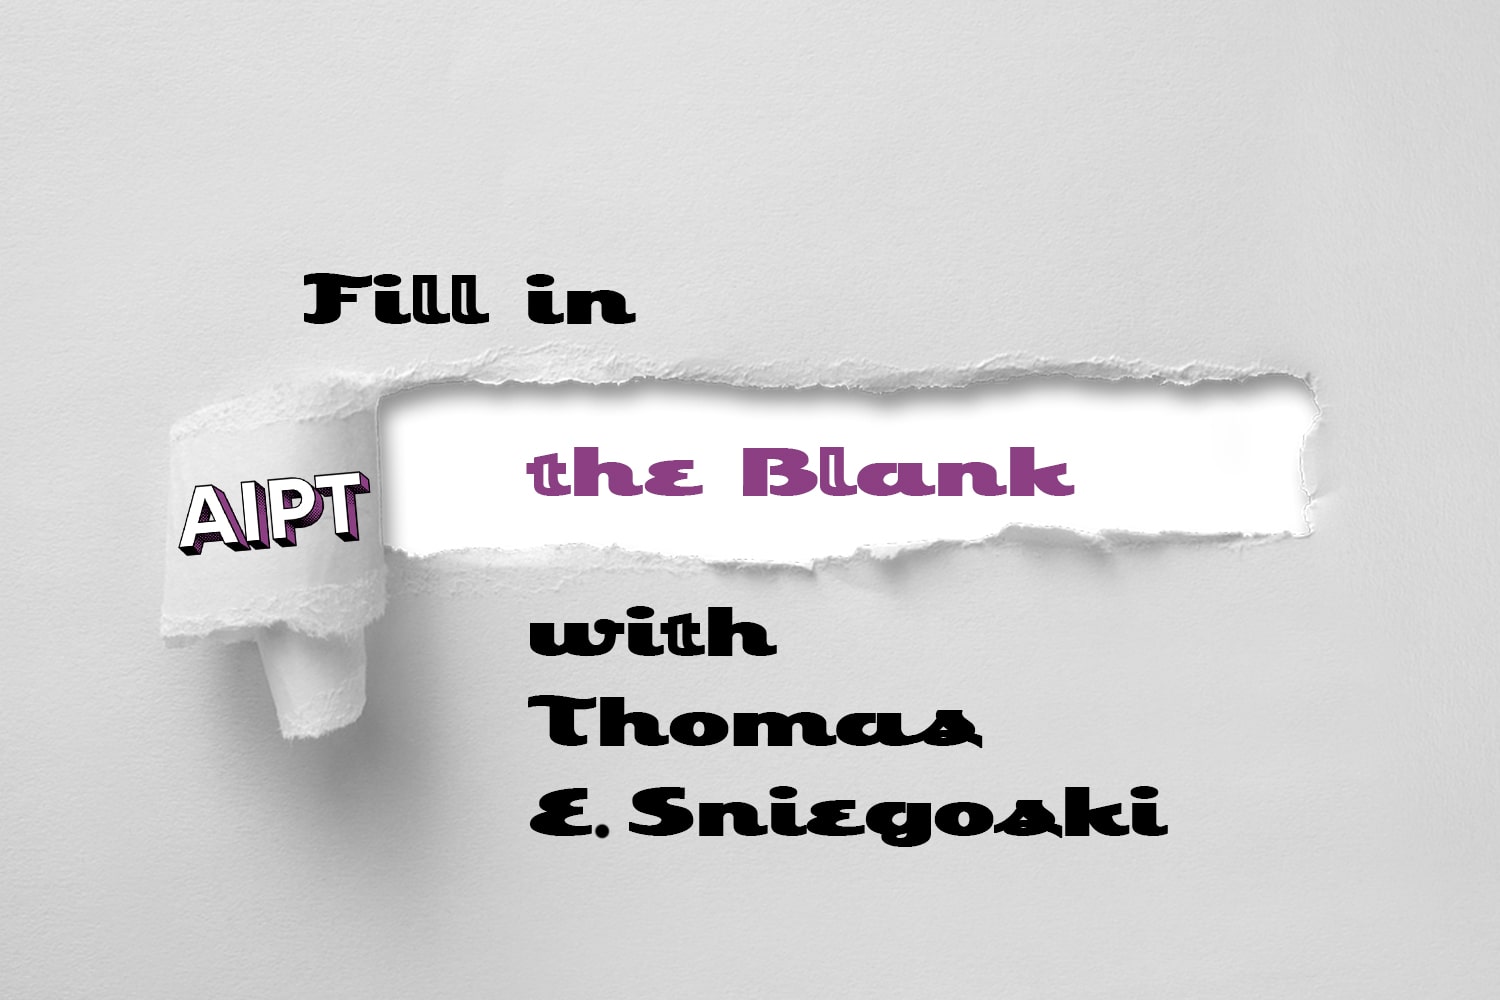 Fill in the Blank: Thomas E. Sniegoski